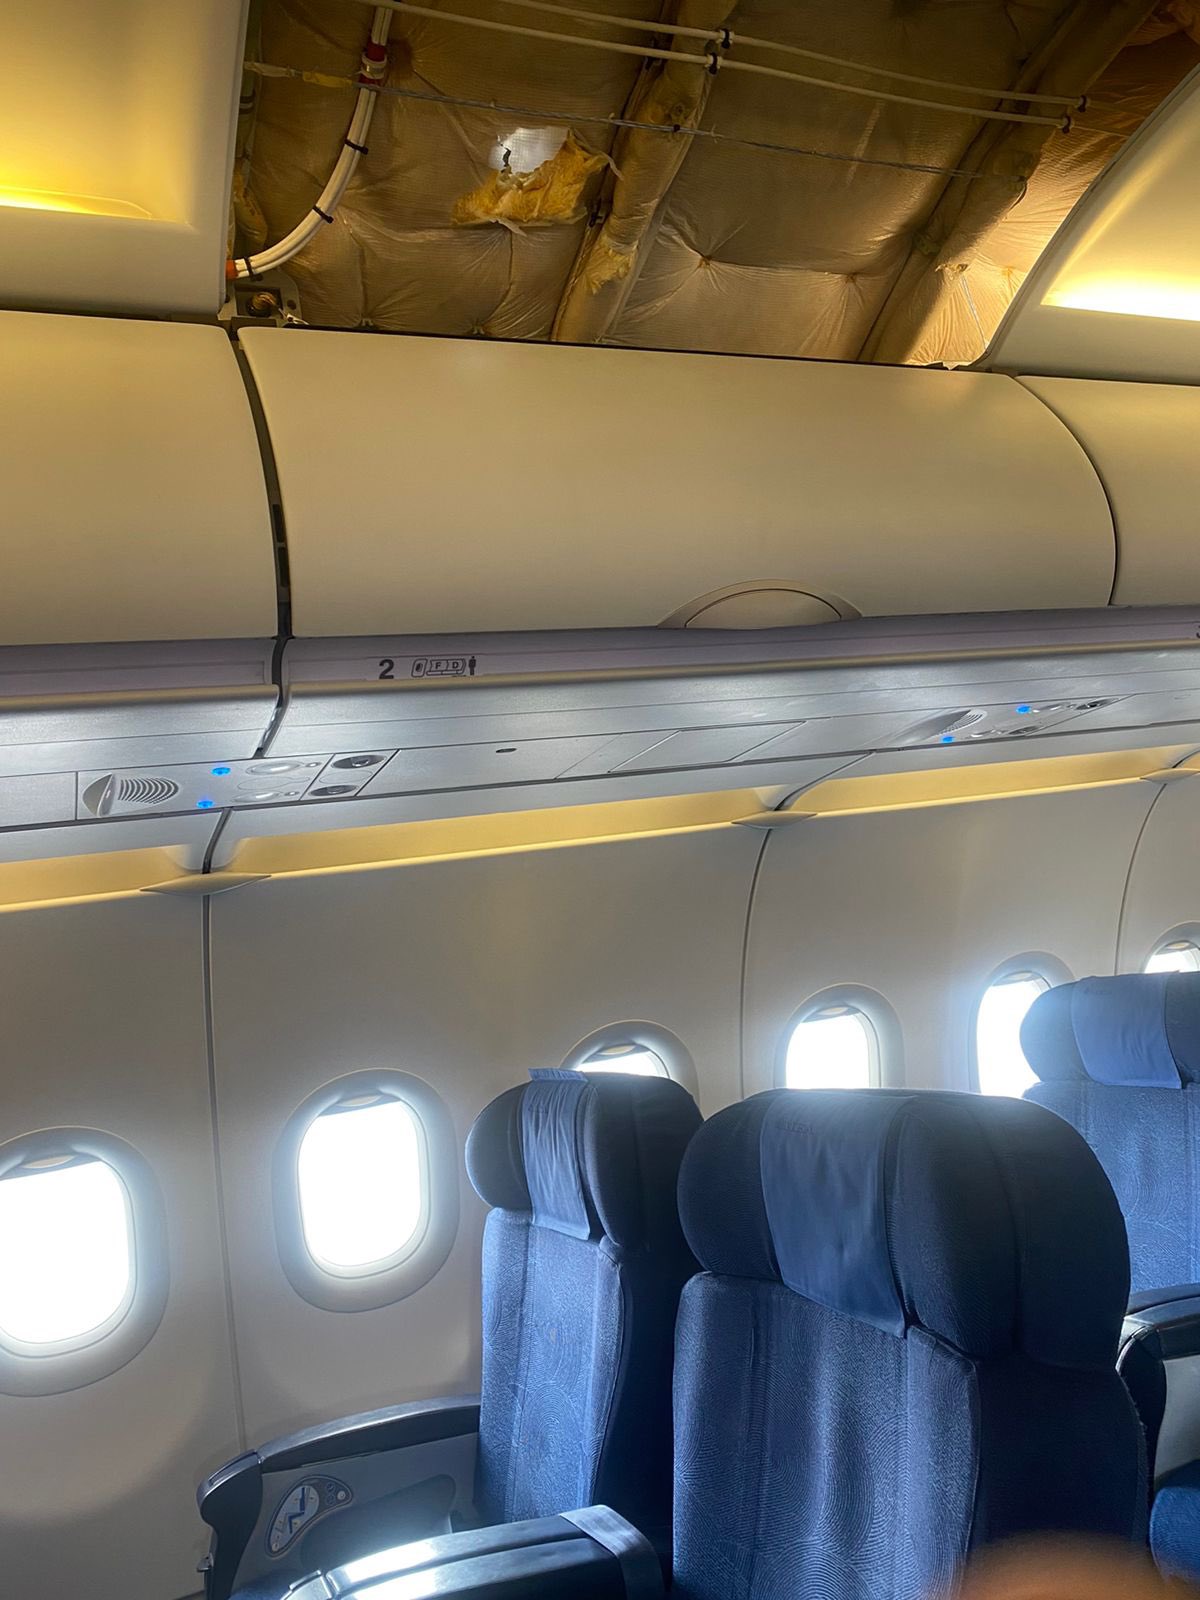 Αδέσποτη σφαίρα σε αεροπλάνο: Σοκ την ώρα της προσγείωσης